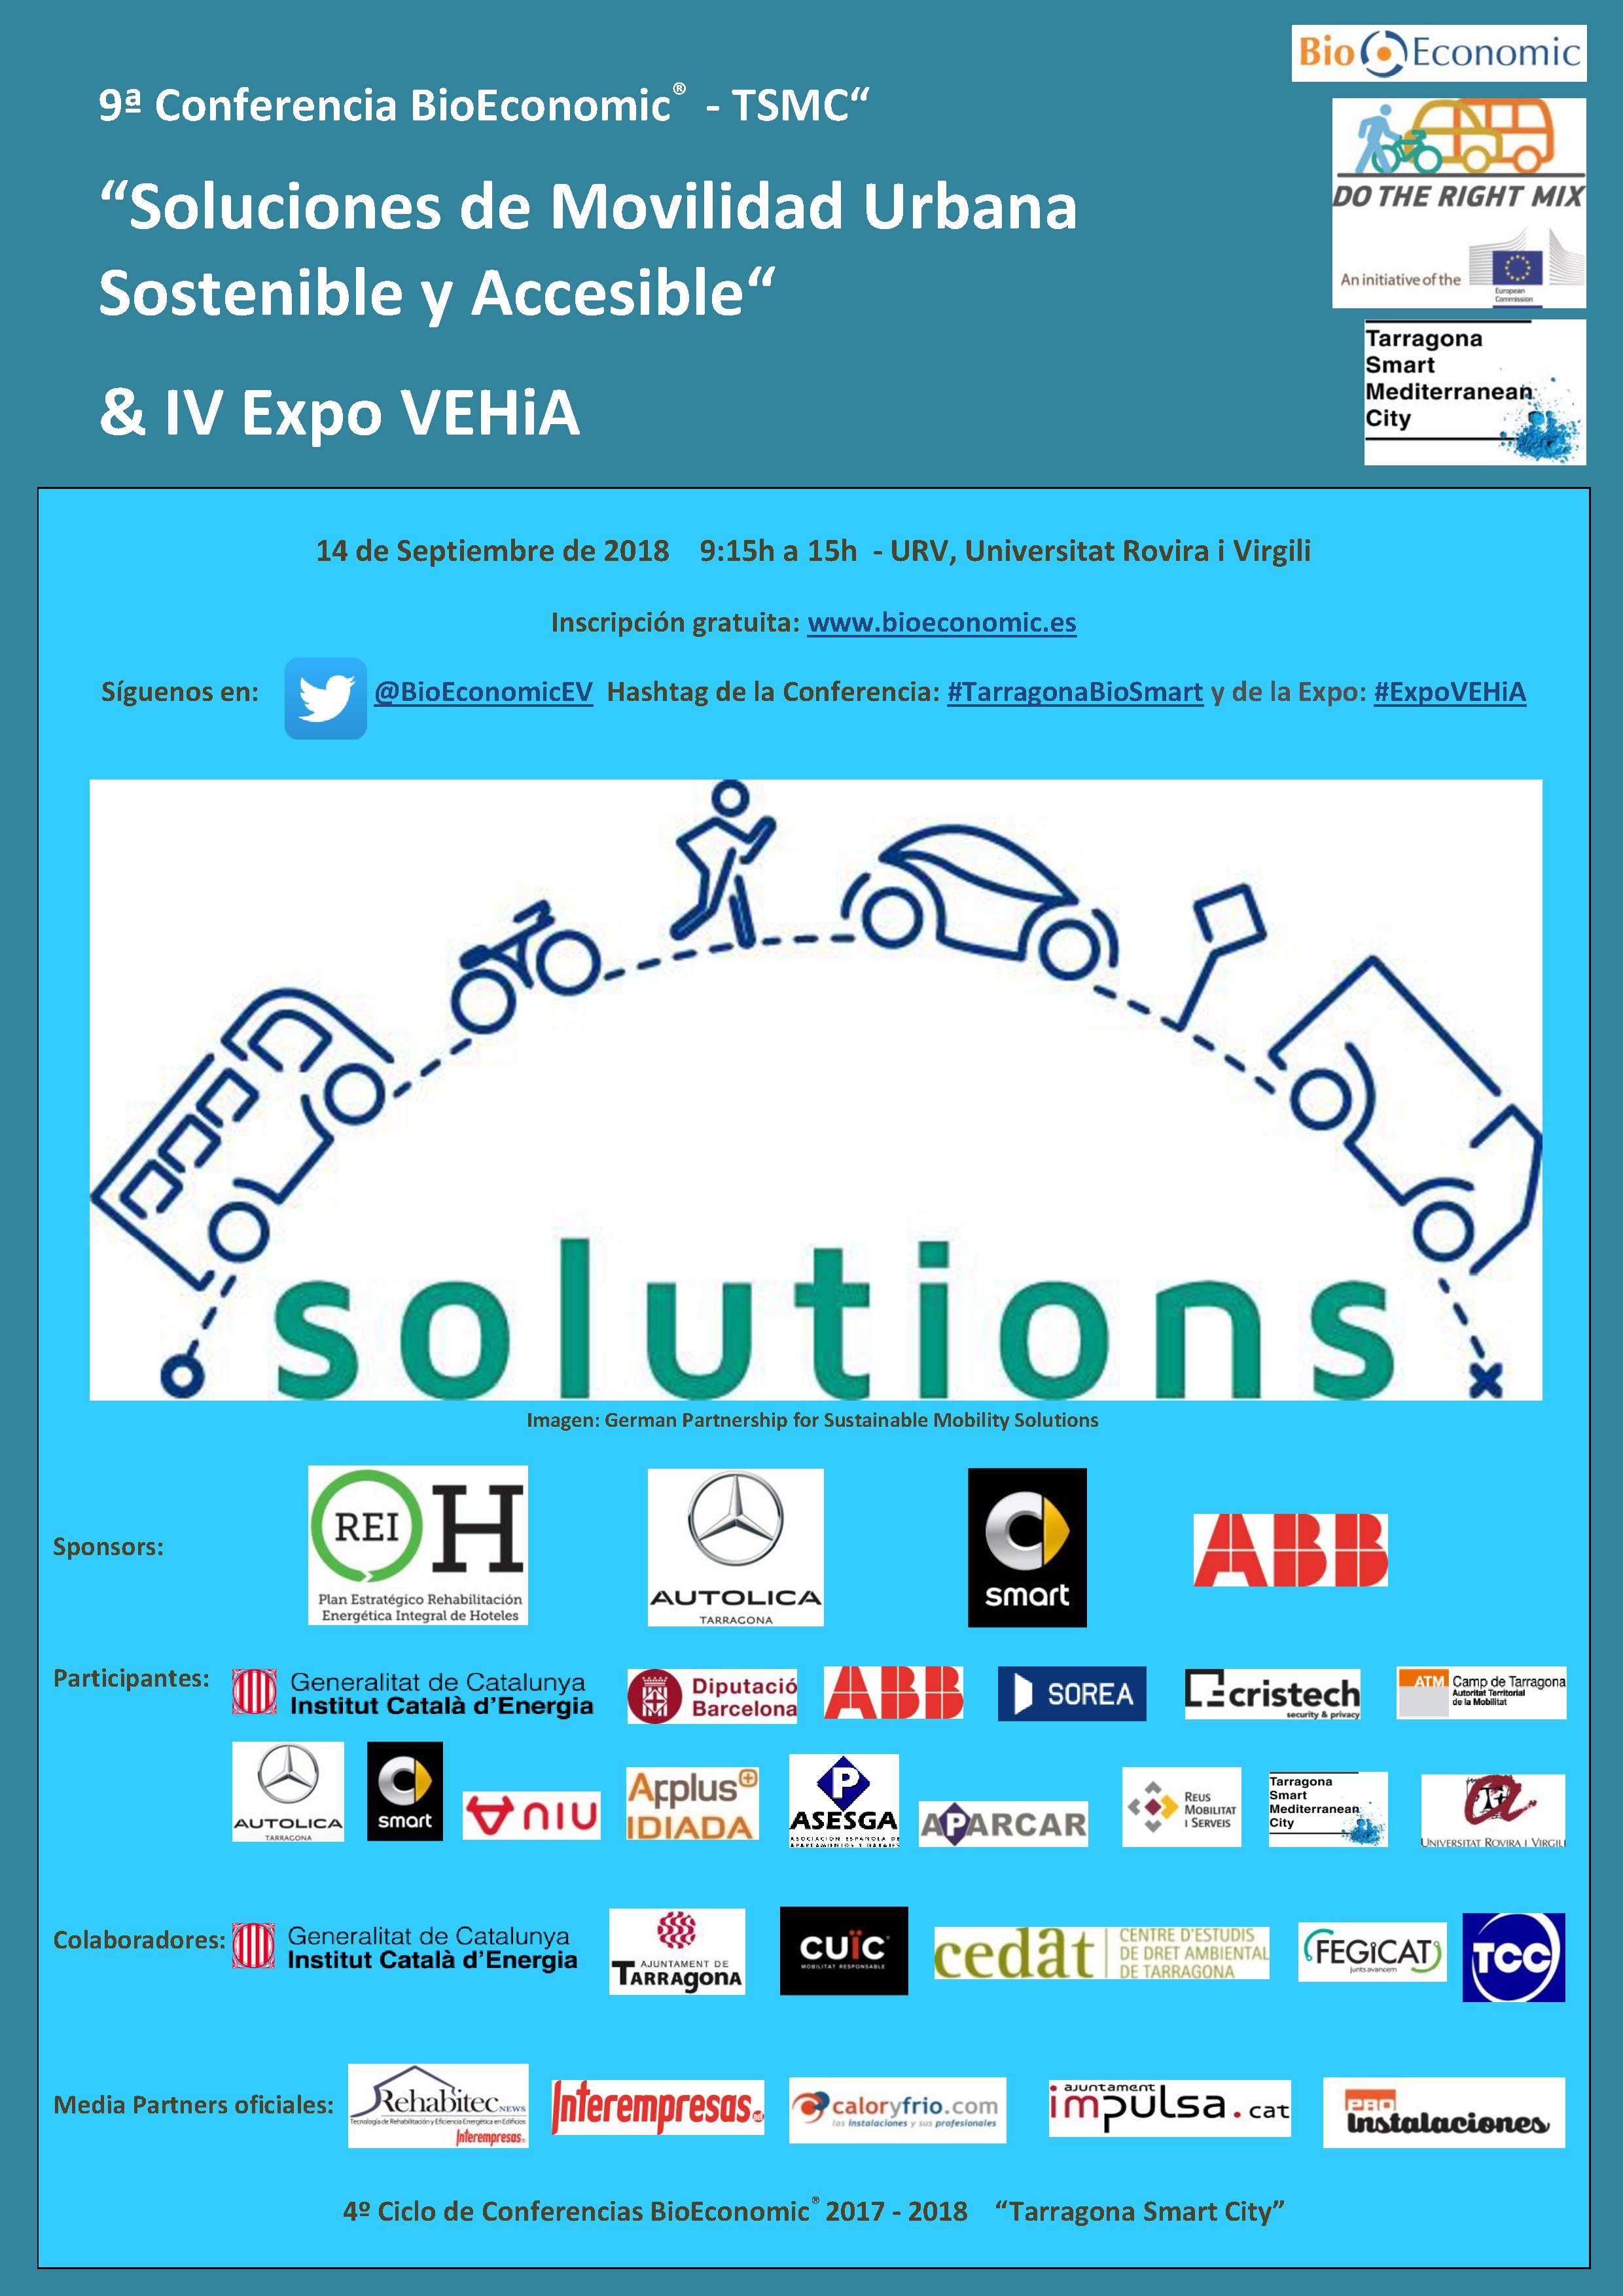 URV Universitat Rovira i Virgili - Novena conferencia: Soluciones de Movilidad Urbana Sostenible y Accesible